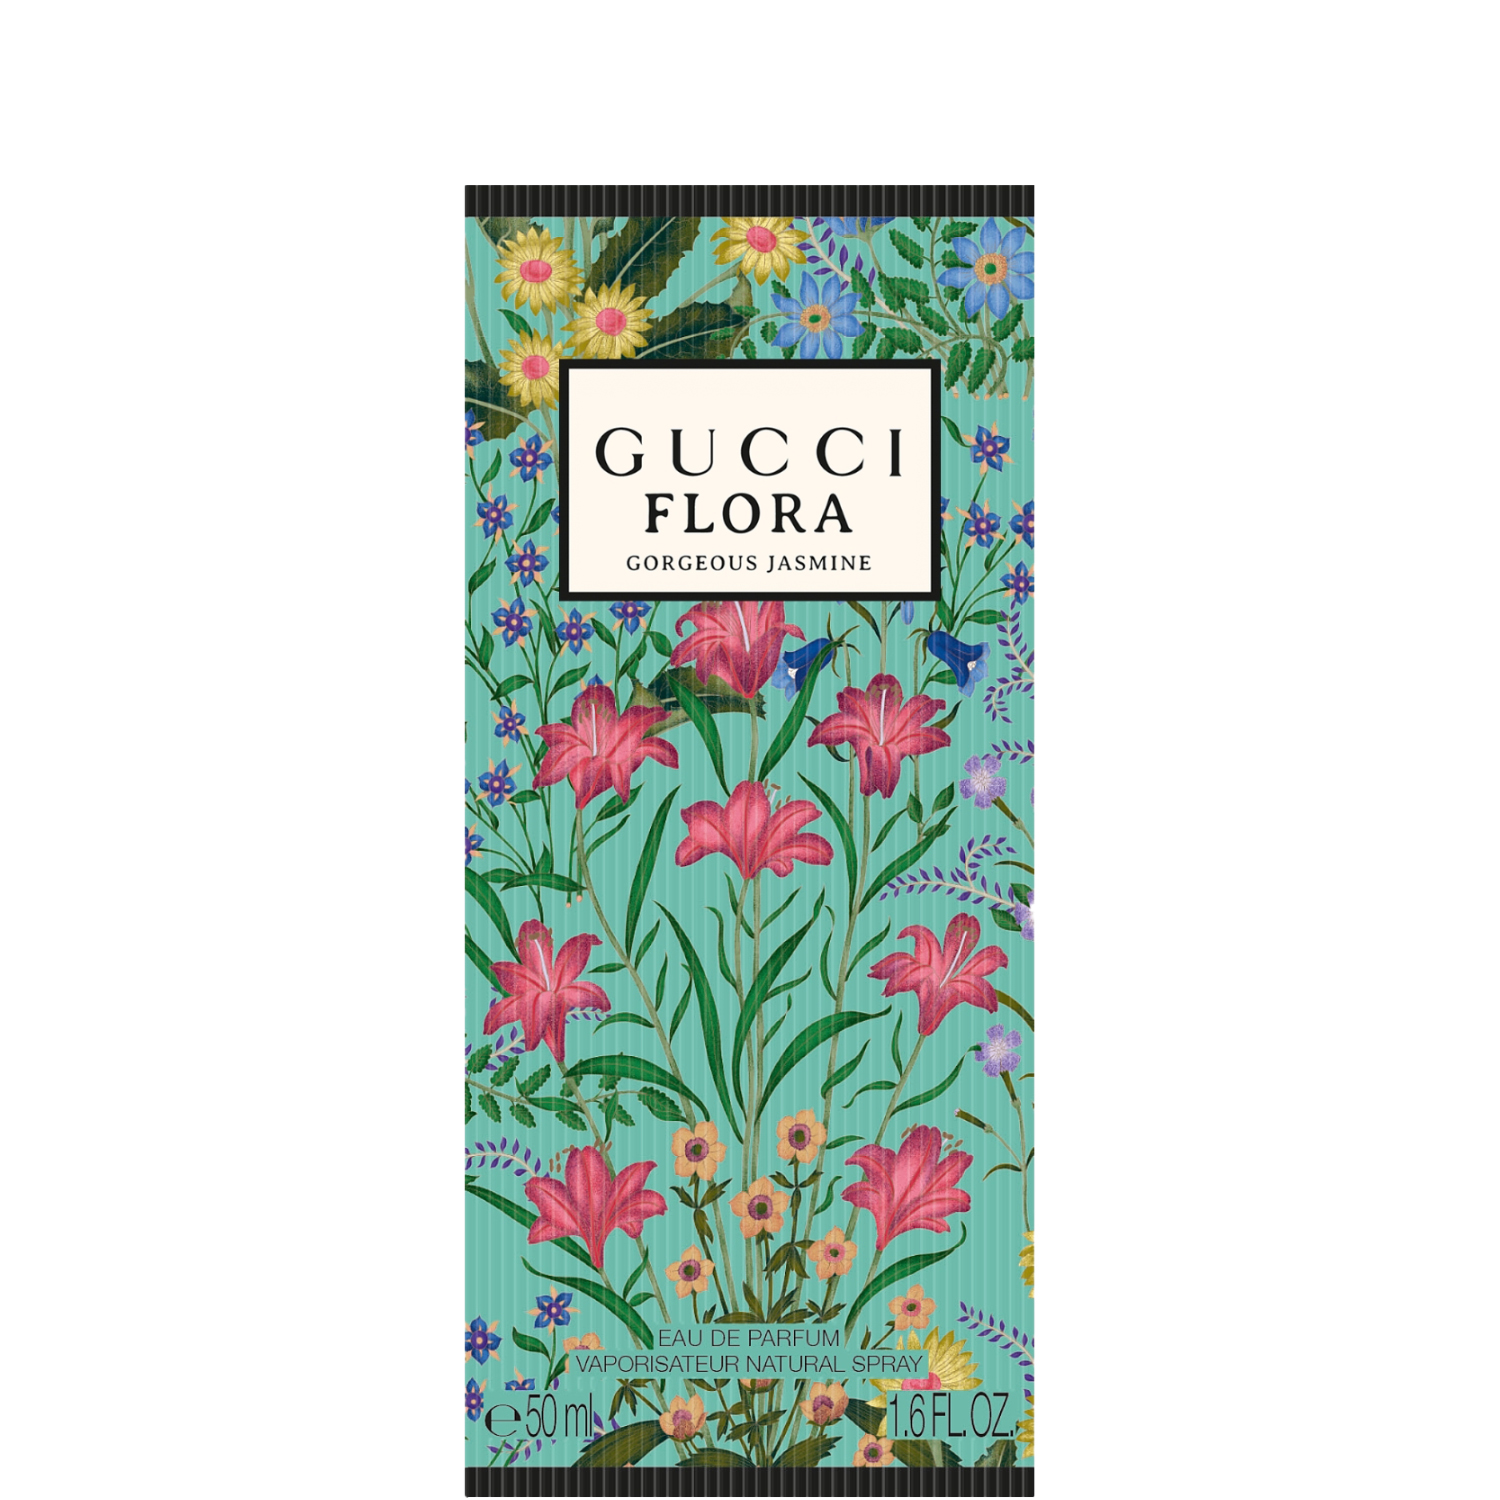 Gucci Flora Gorgeous  Jasmine Eau de Parfum 50ml